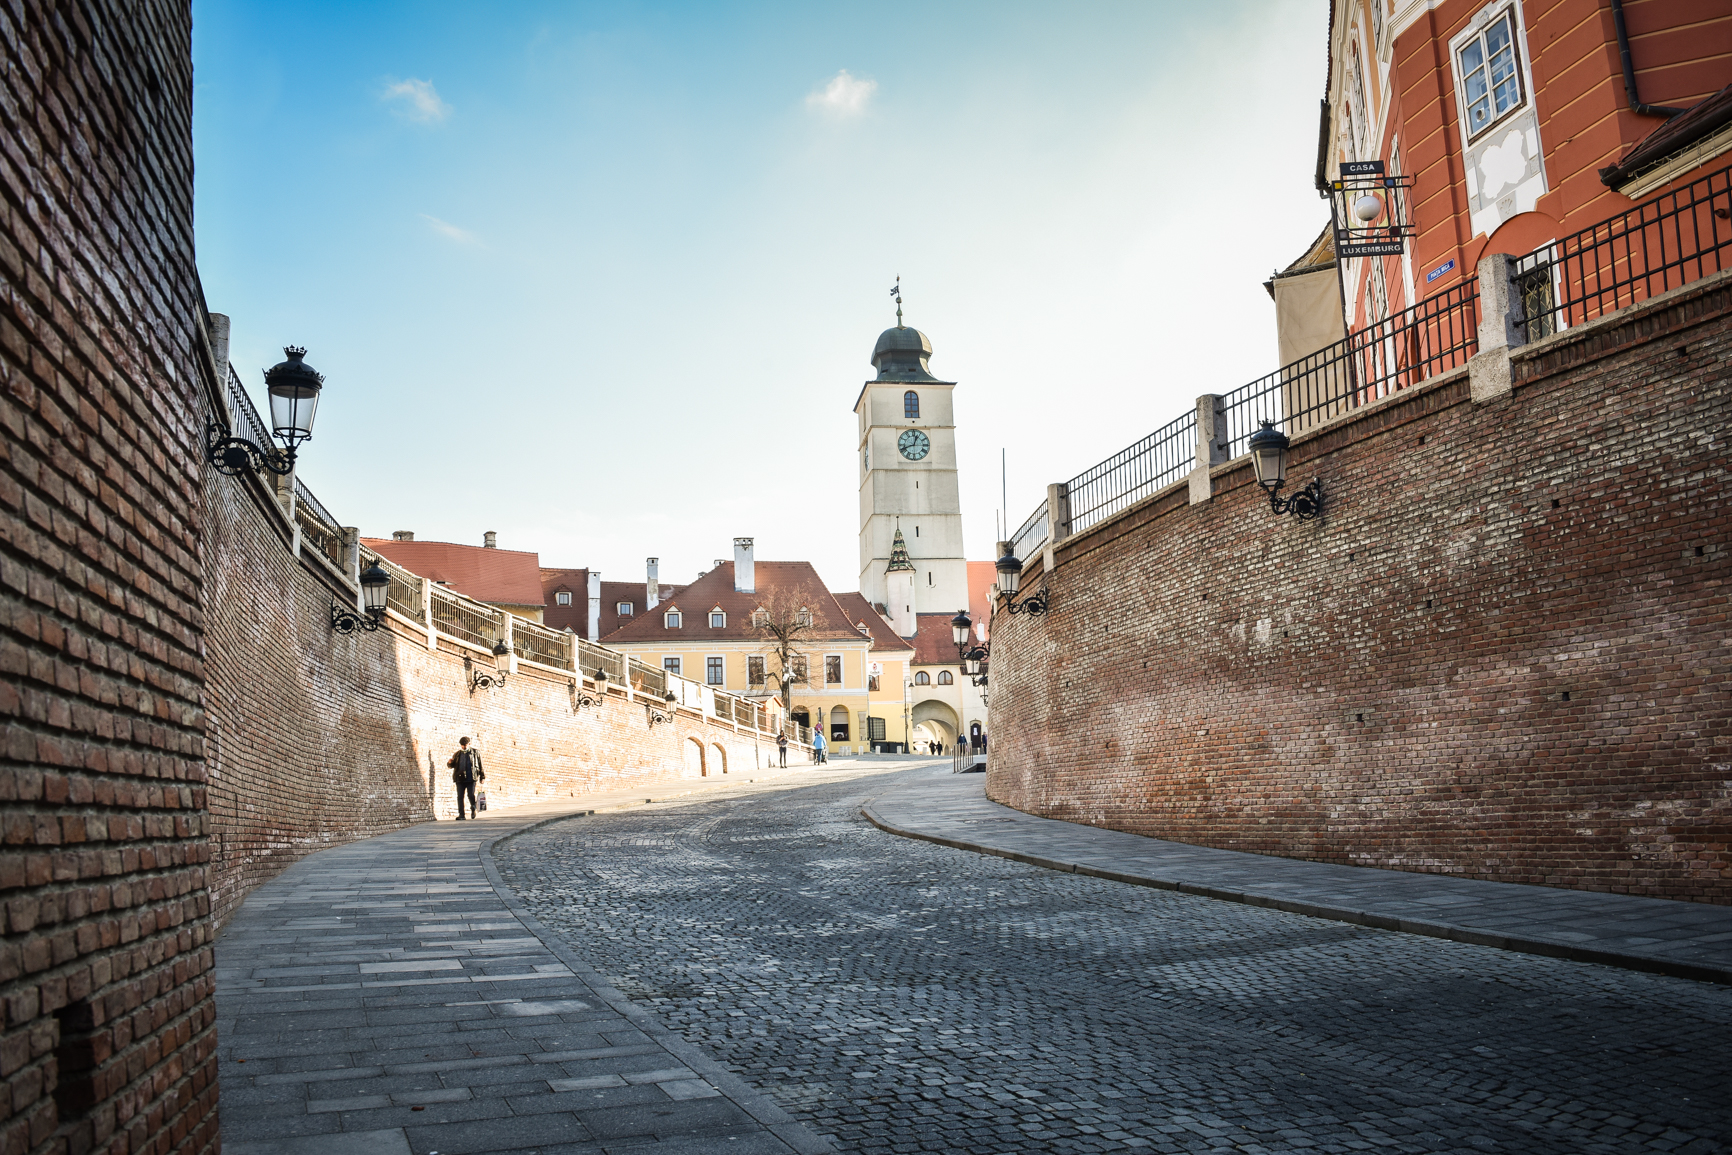 Business Insider, ediția din Spania, recomandă Sibiul, ca destinație turistică, în 2022. ”România este una dintre cele mai ieftine țări din UE”